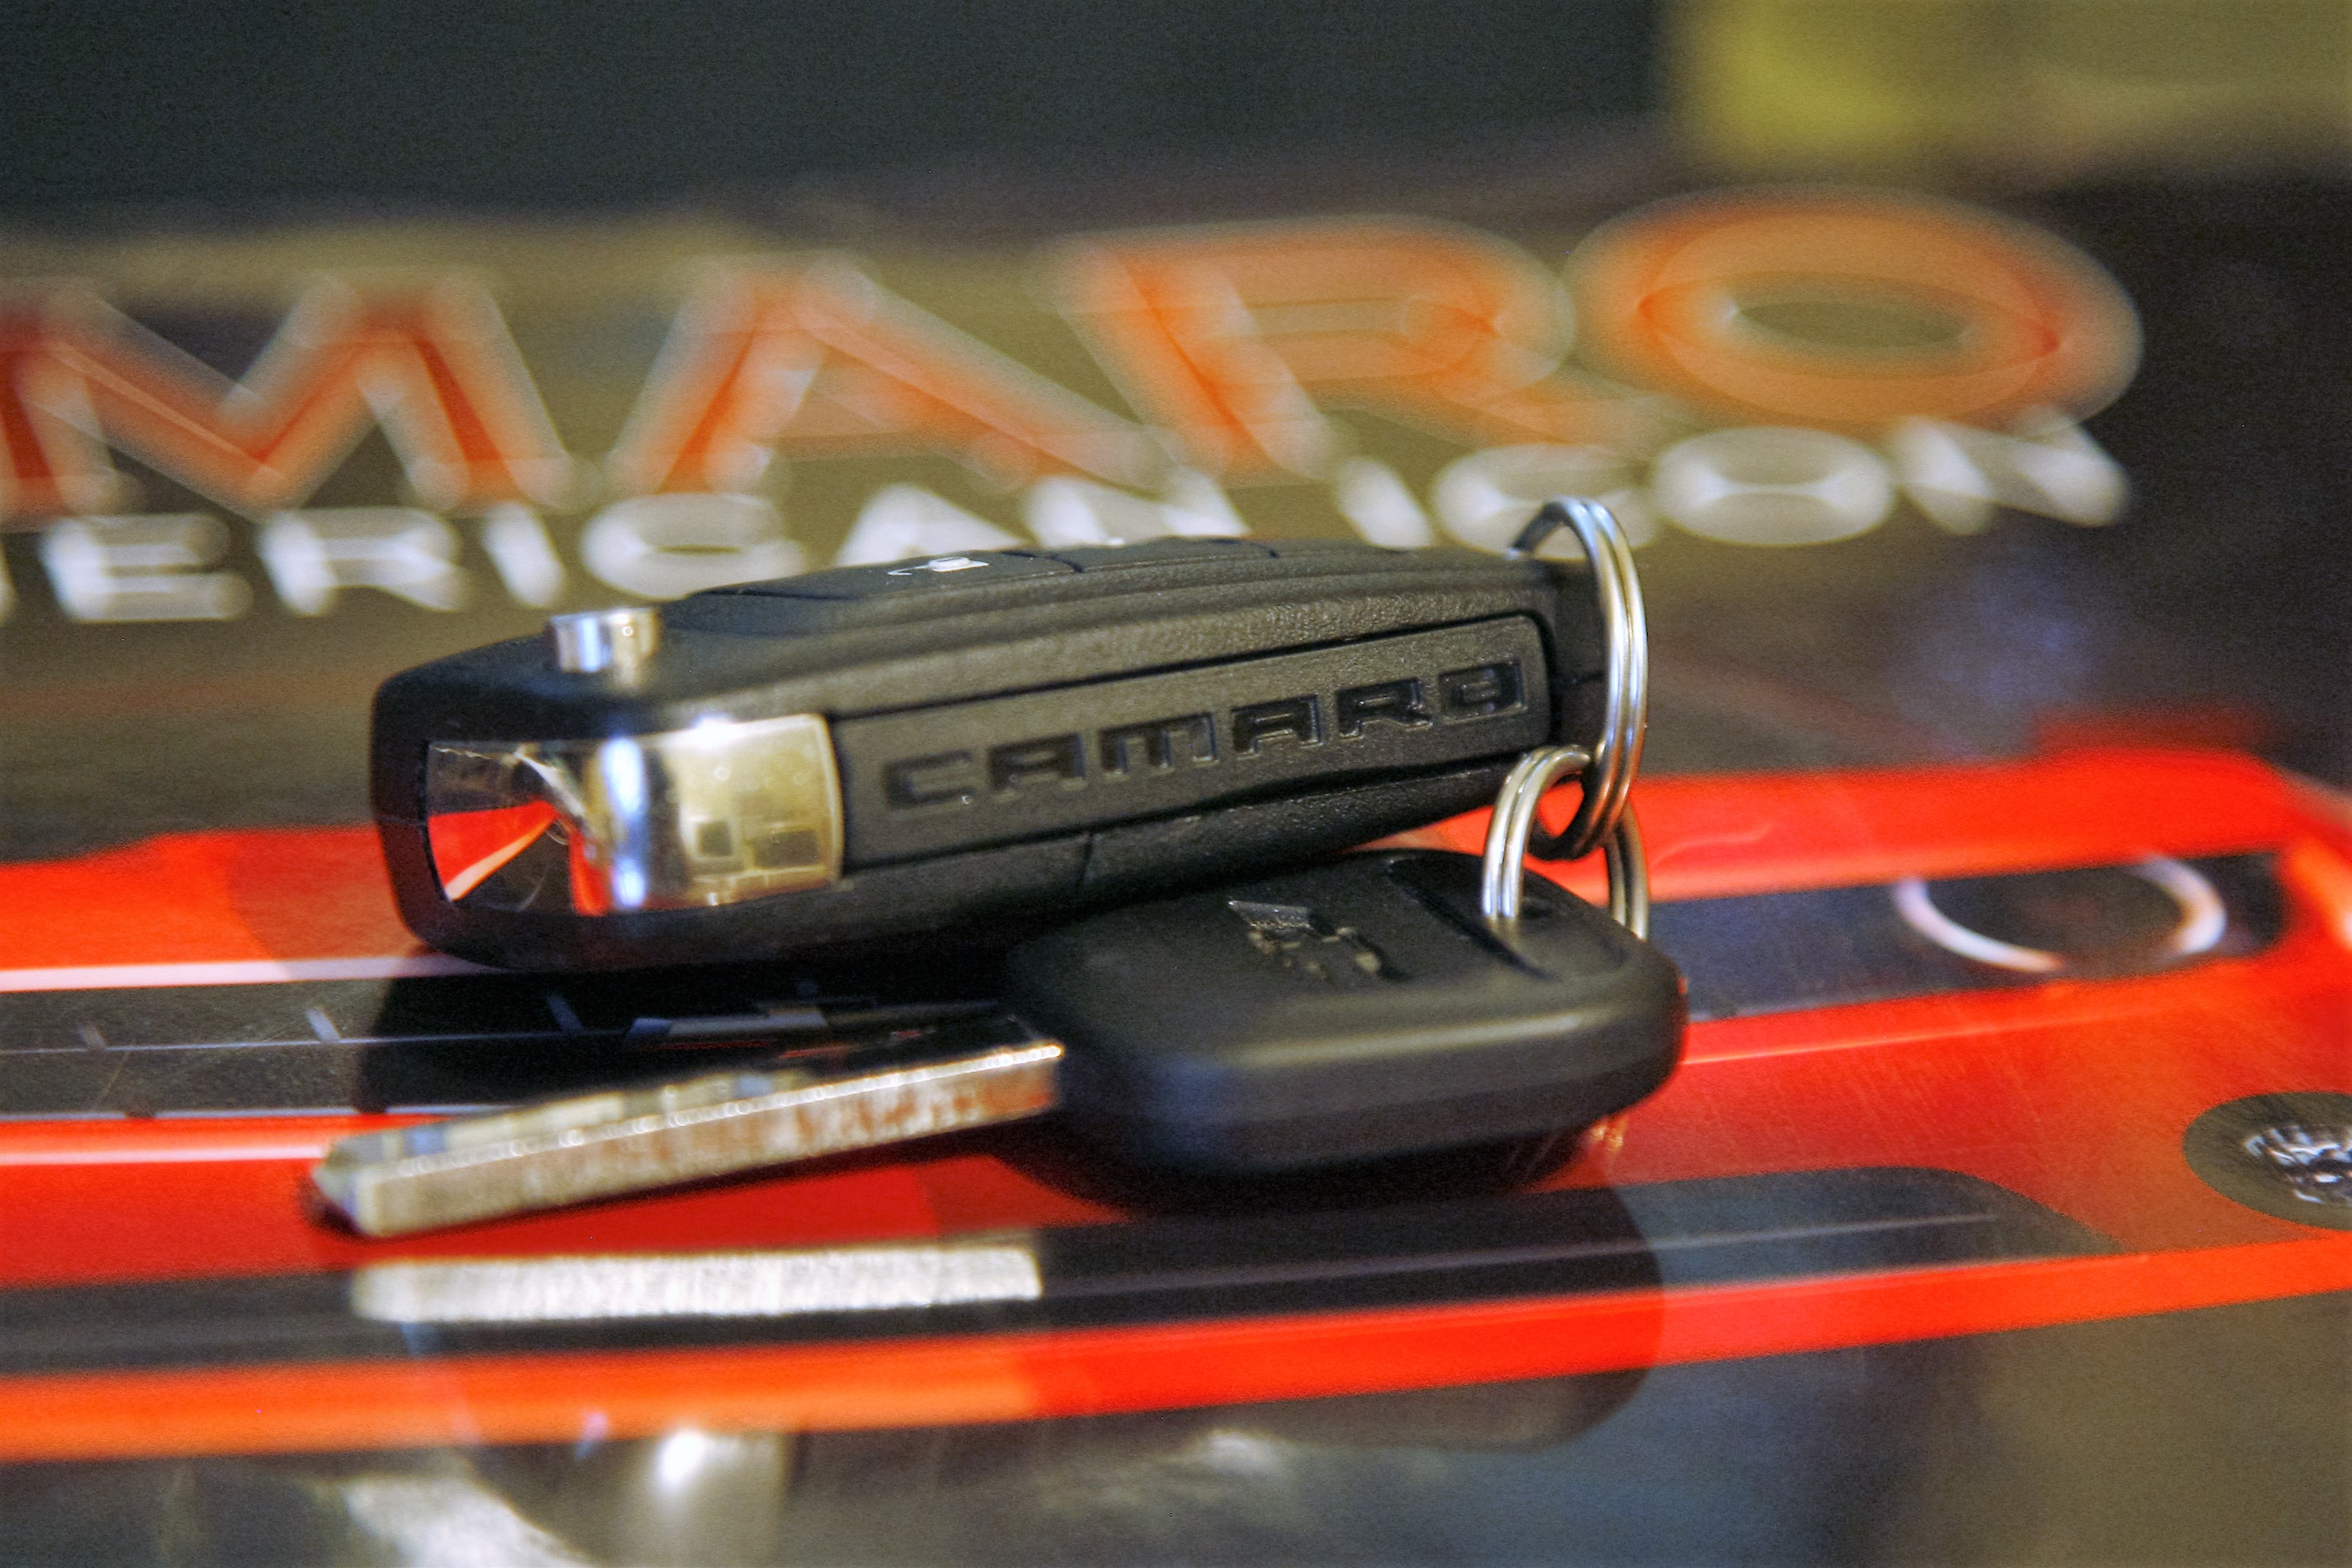 lost key, need help - Camaro Forums - Chevy Camaro Enthusiast Forum